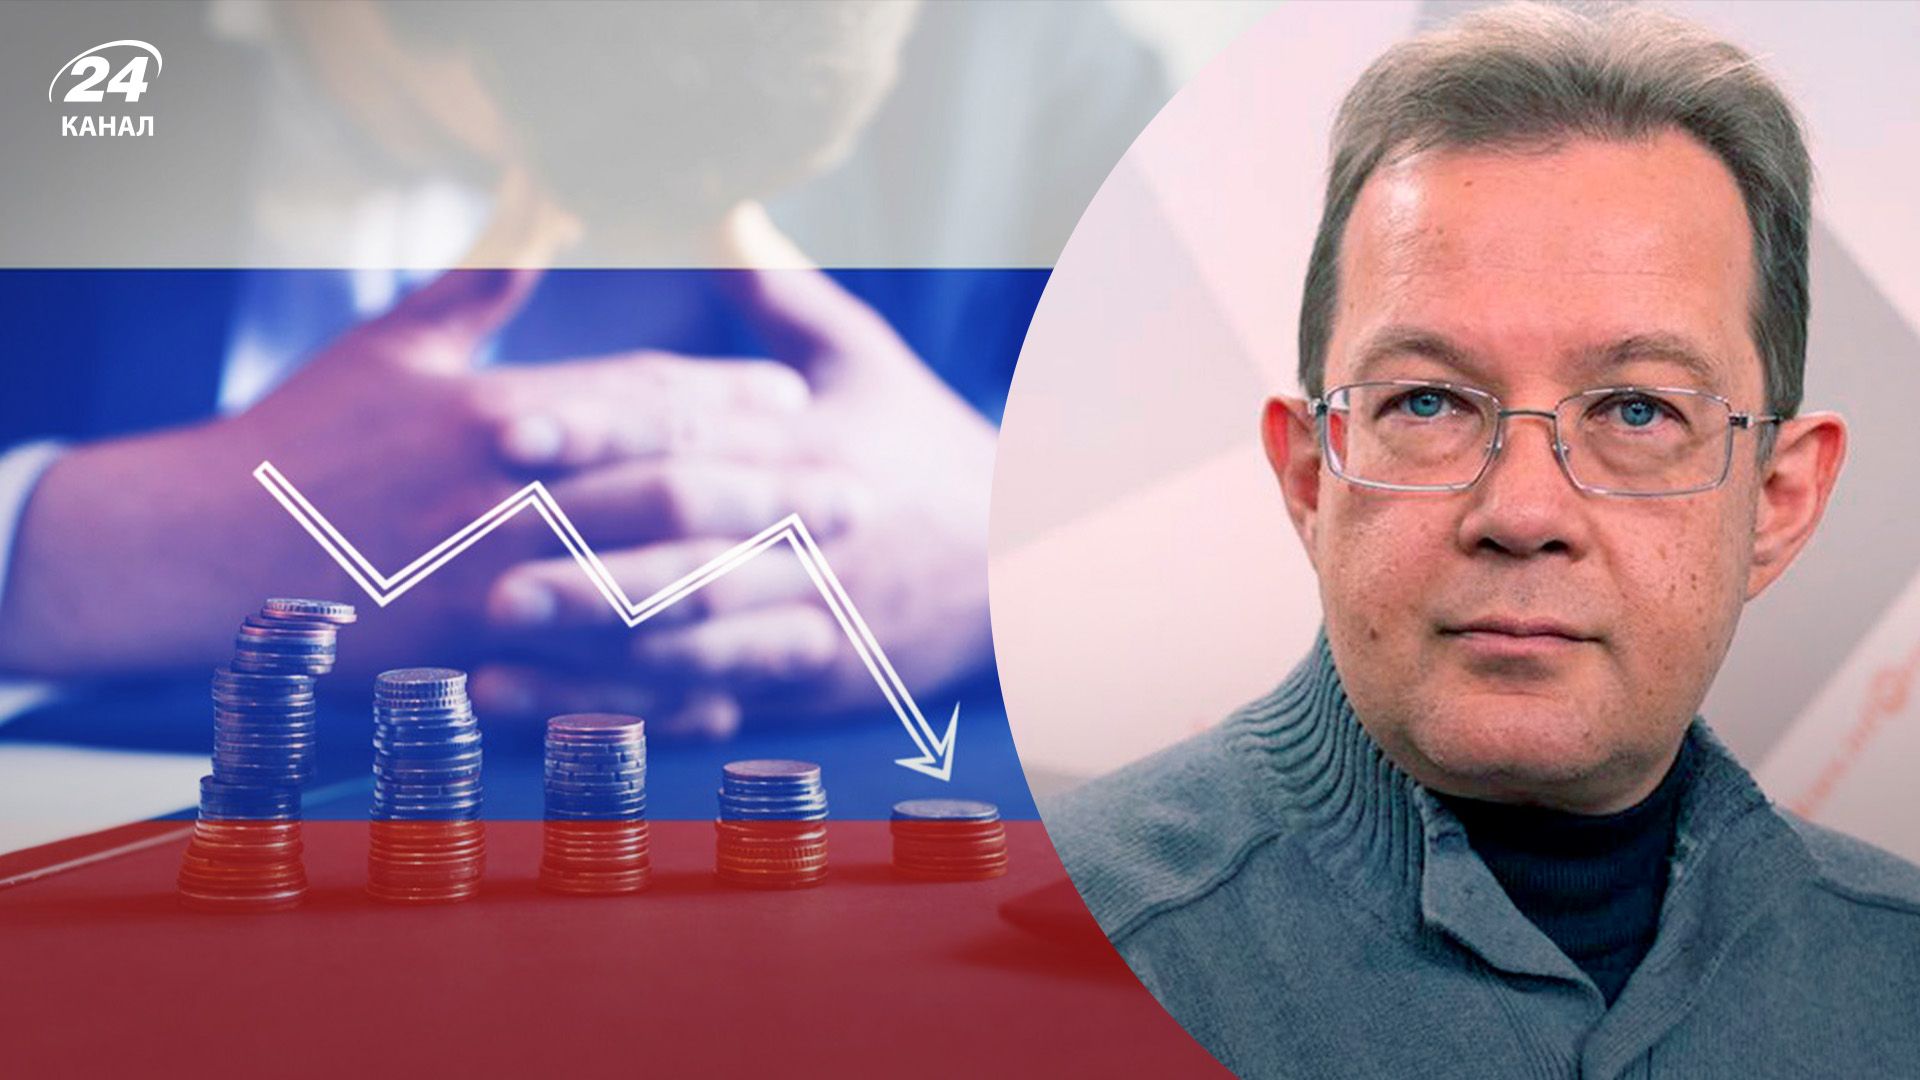 Коли буде кризовий пік у Росії: економіст назвав термін та пояснив, що на це вплинуло найбільше